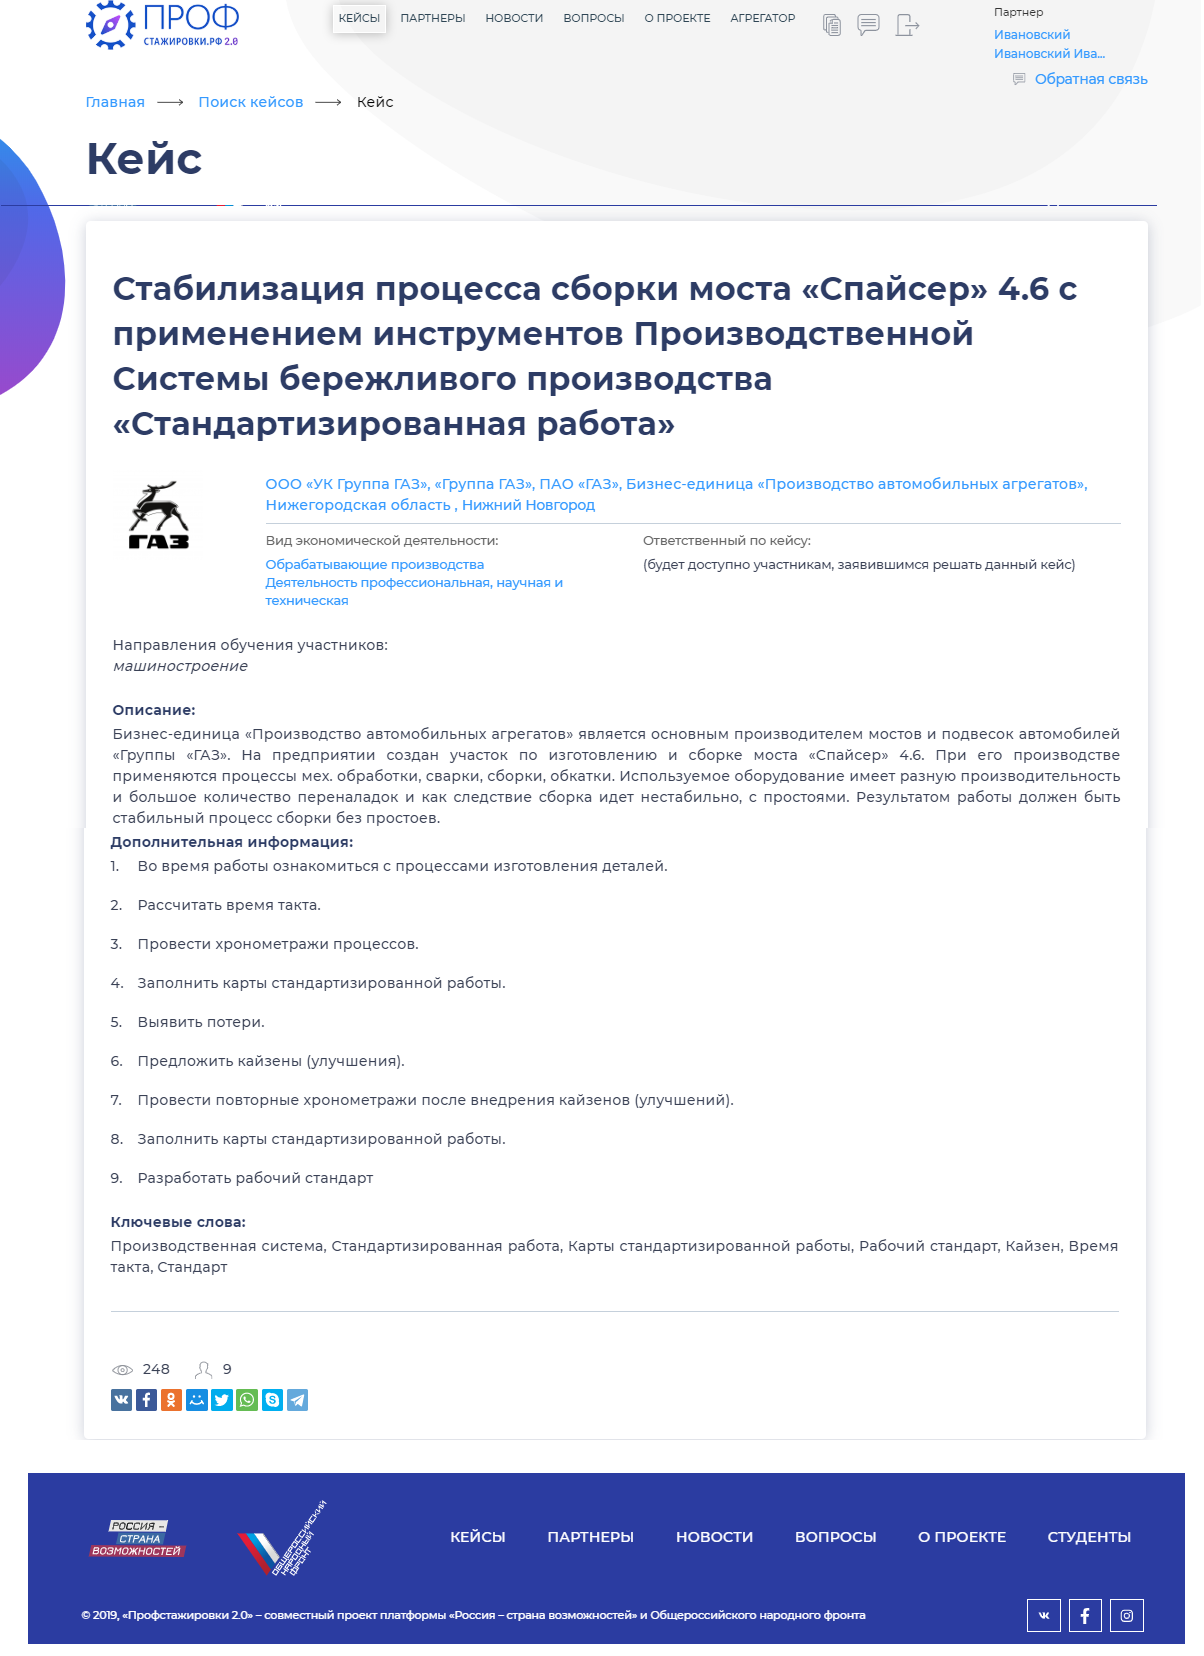 сайт всероссийского конкурса студенческих работ «профстажировки»